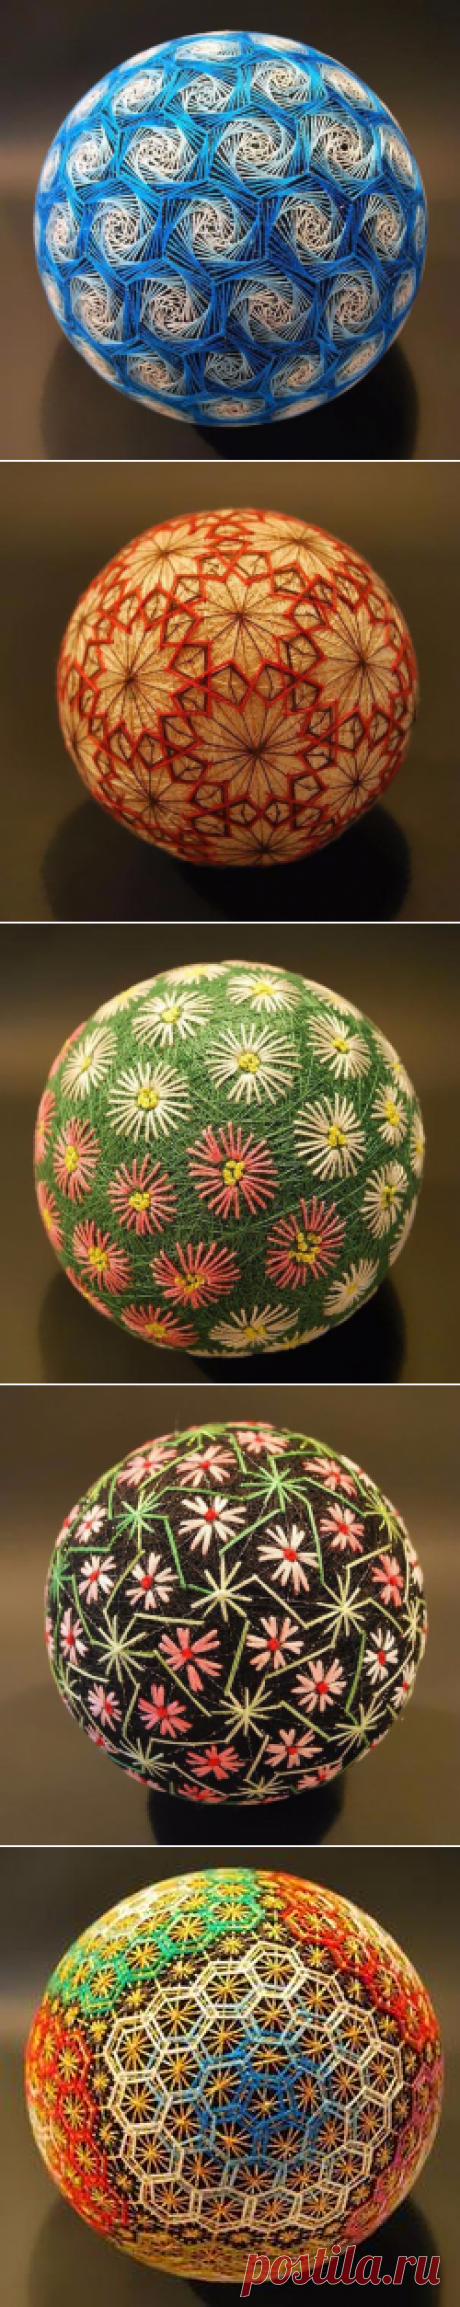 Удивительная коллекция традиционных японских шаров “темари”, кропотливо вышитых 92-летней бабушкой, Наной Акуа